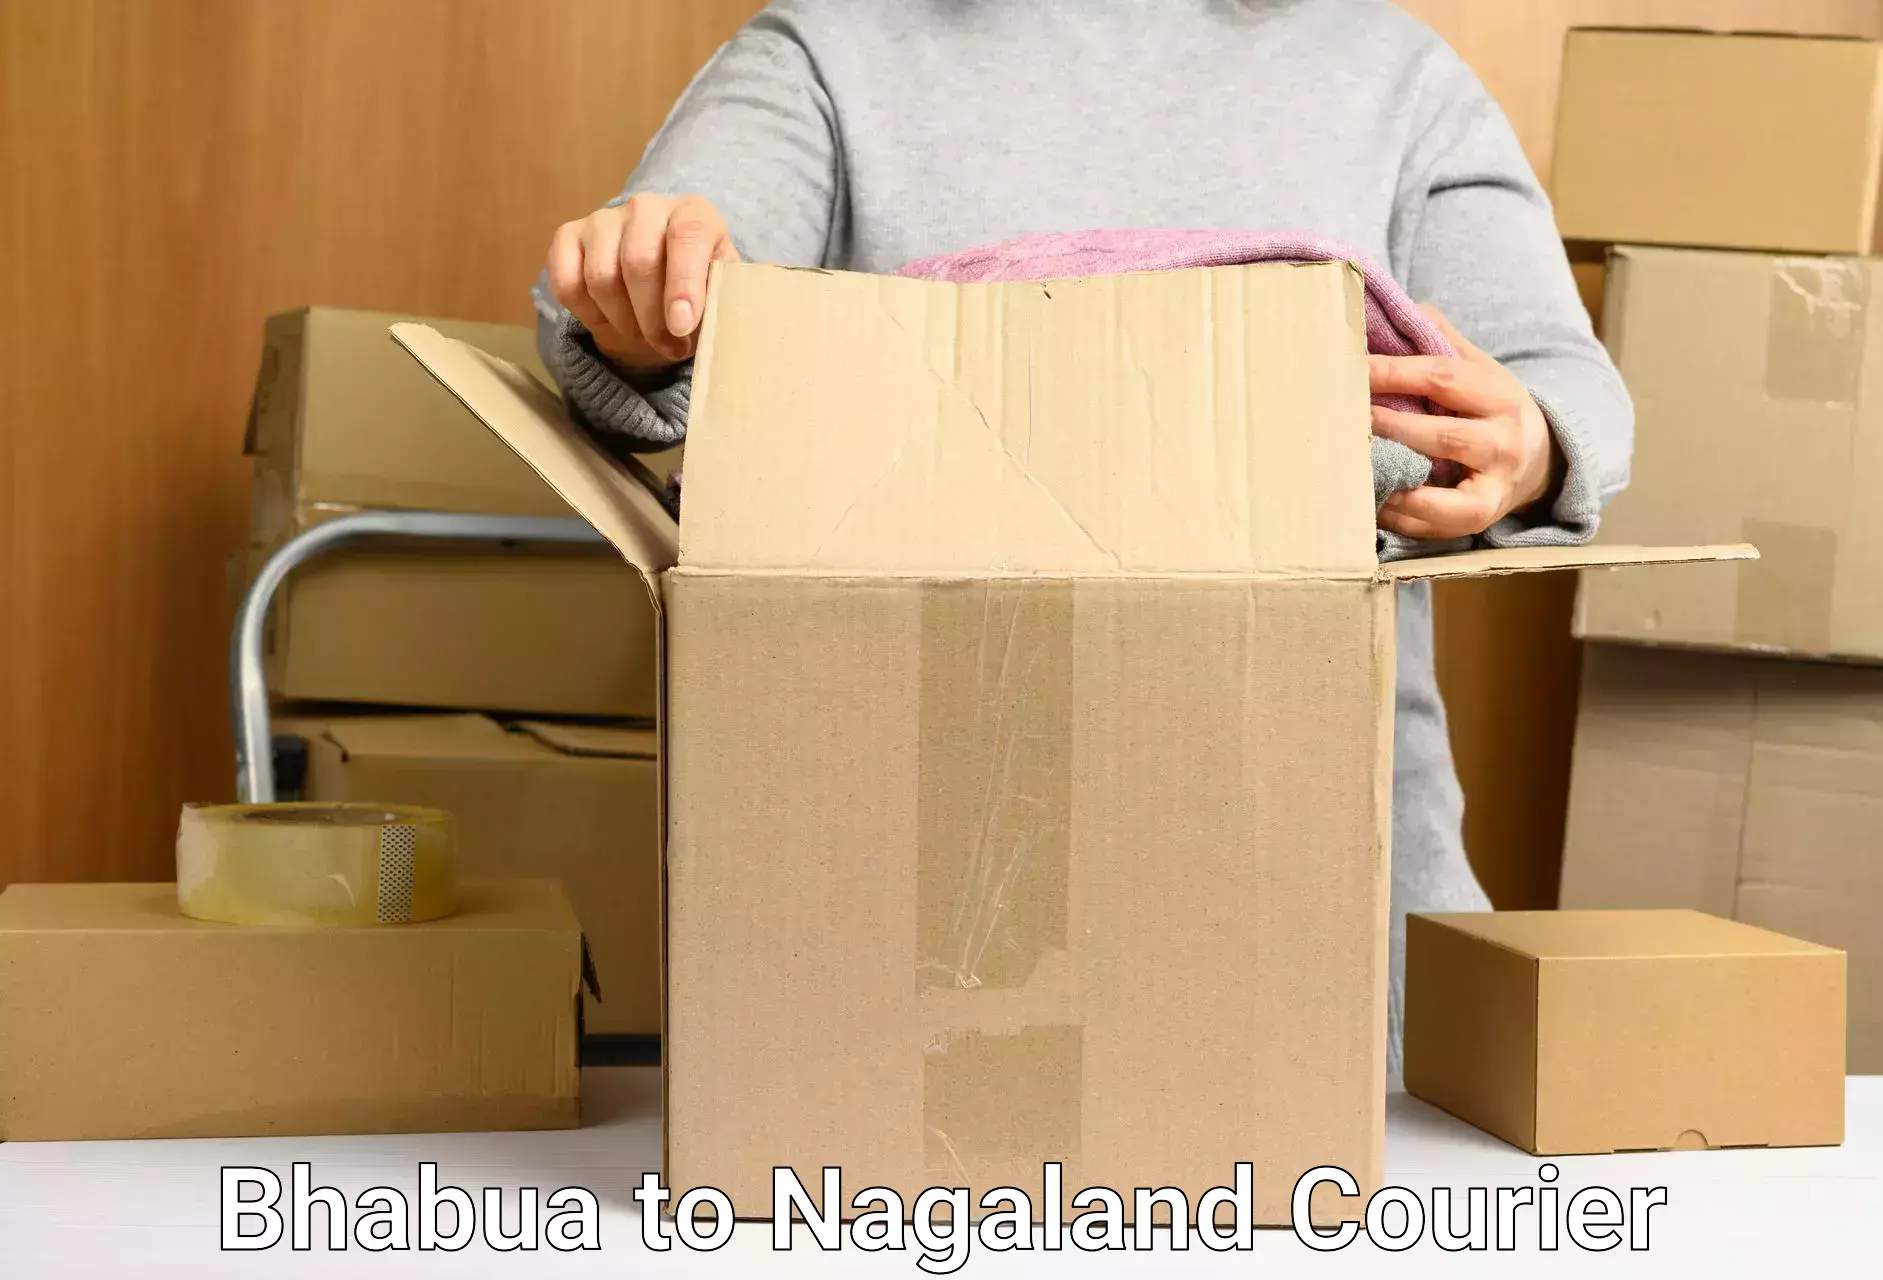 Weekend courier service Bhabua to Nagaland